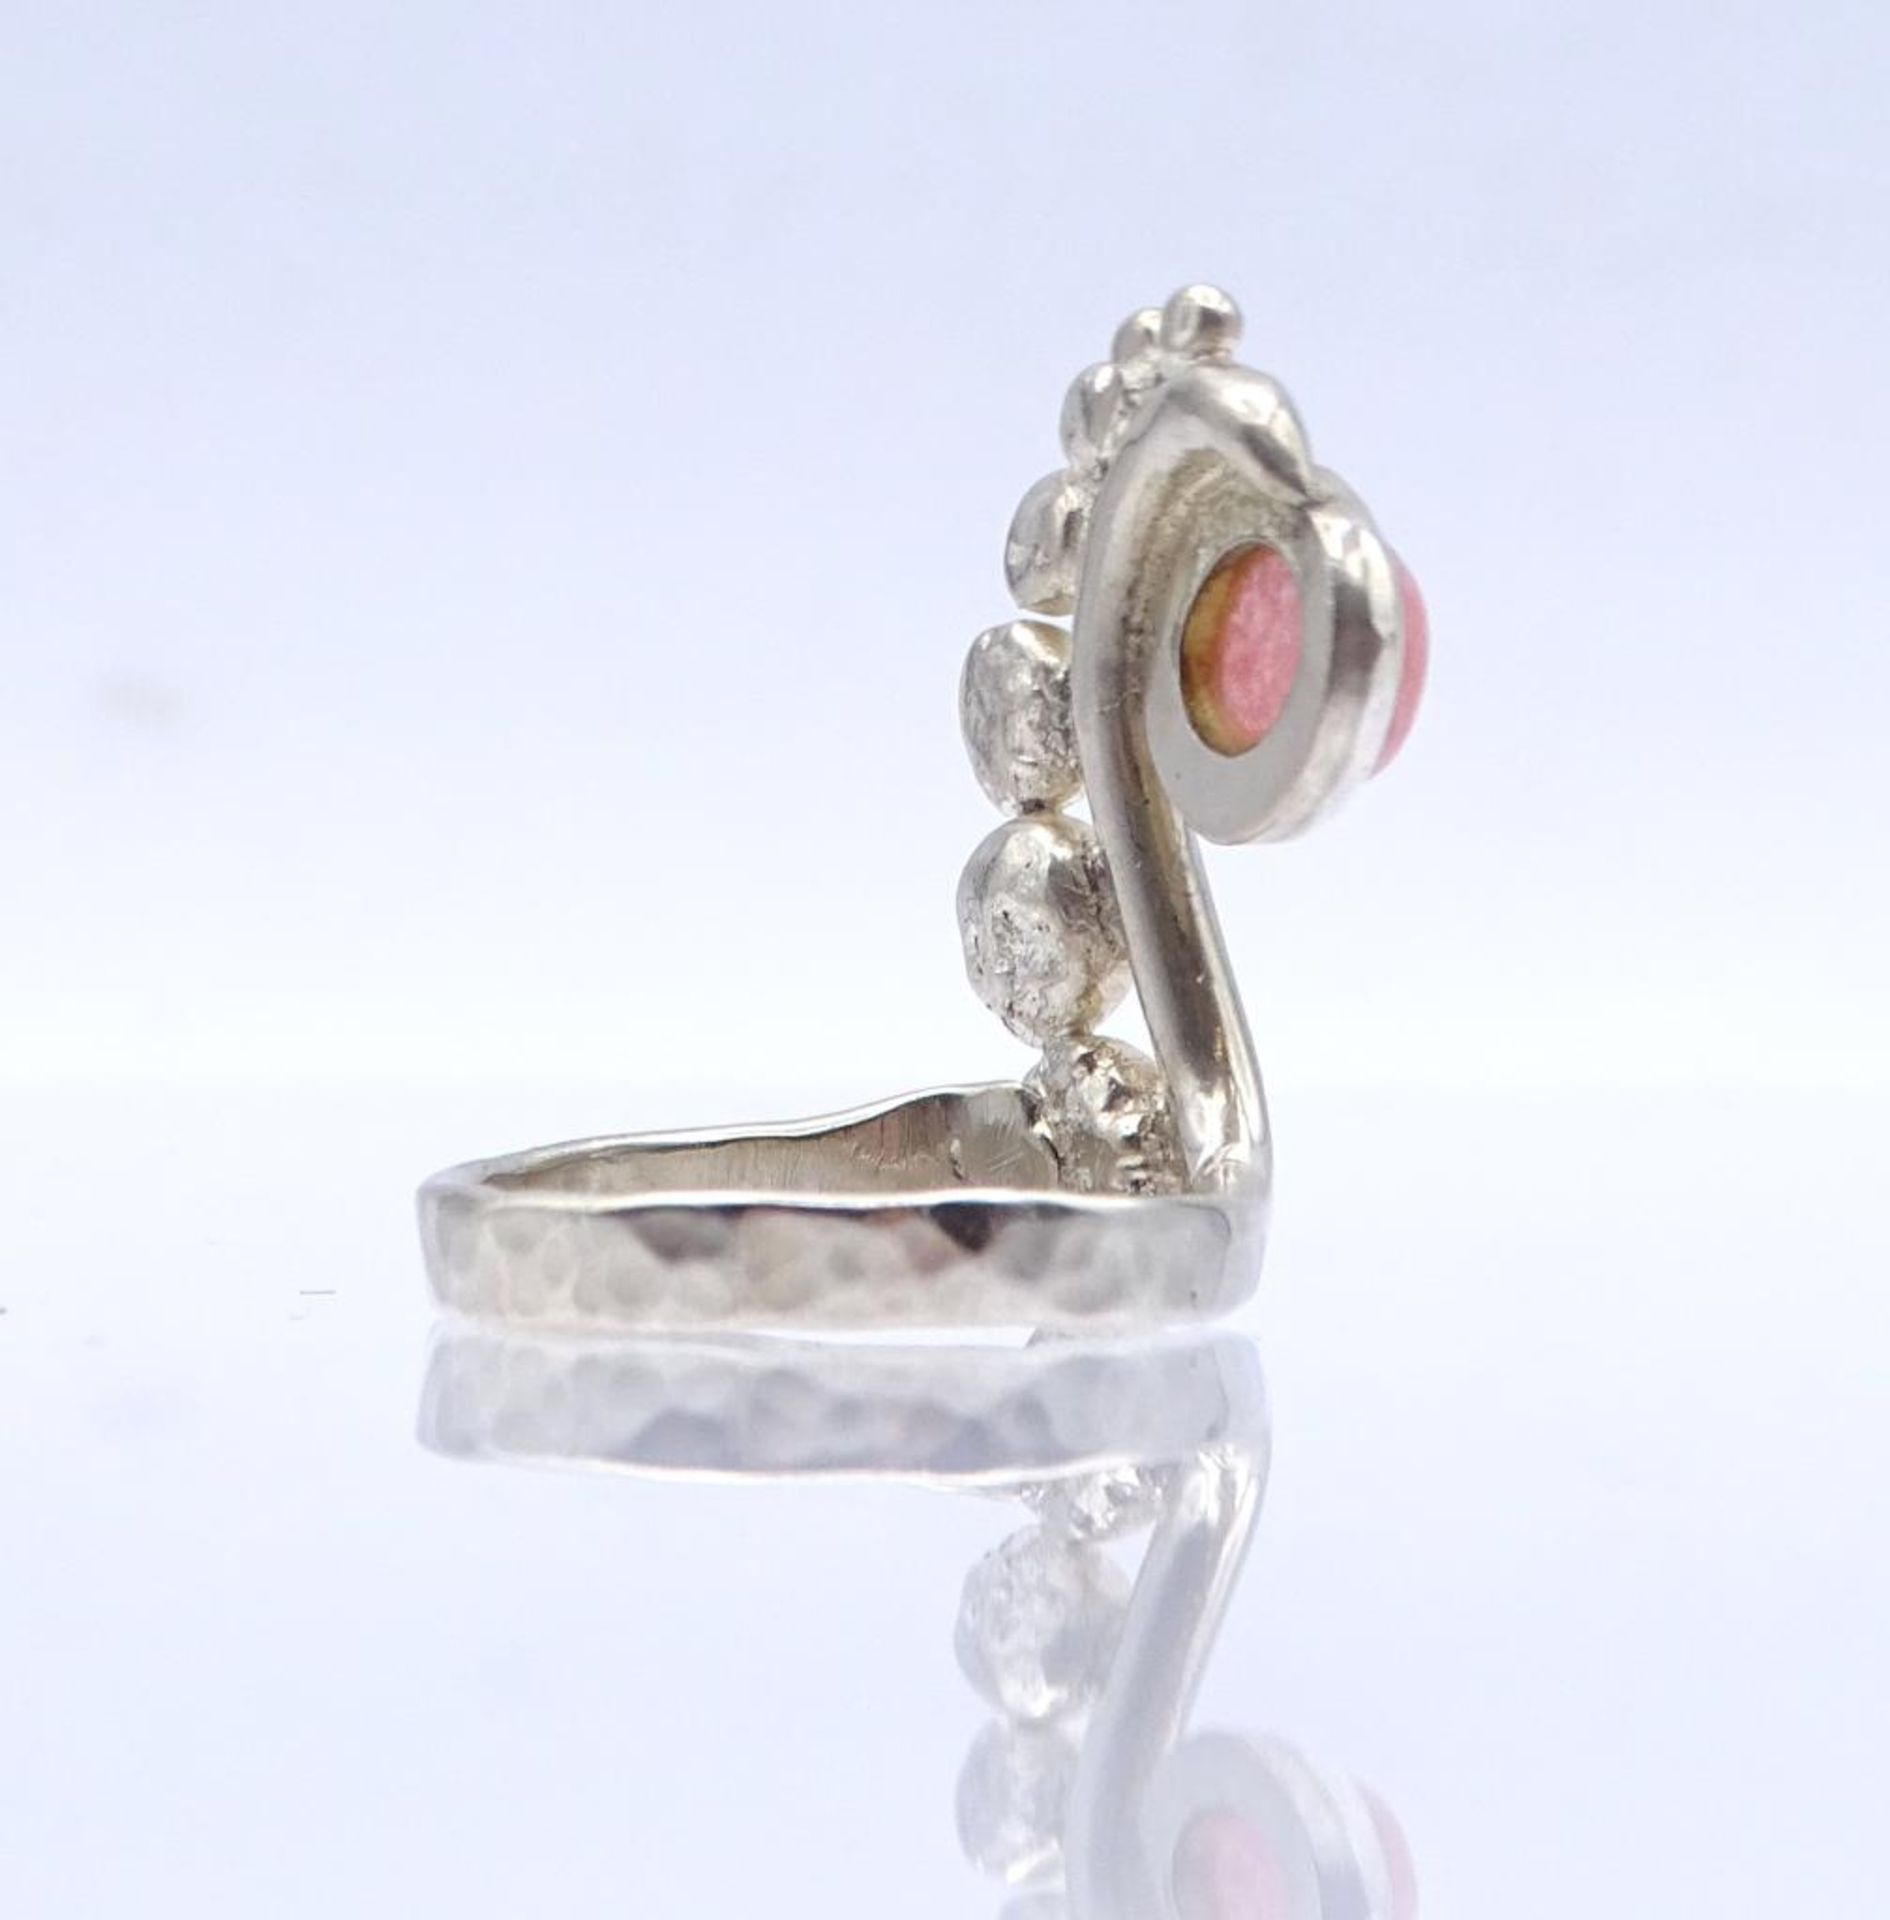 Silber Ring mit Rosenquarz, Hammerschlagdekor,7,2gr., RG 55- - -22.61 % buyer's premium on the - Bild 3 aus 4